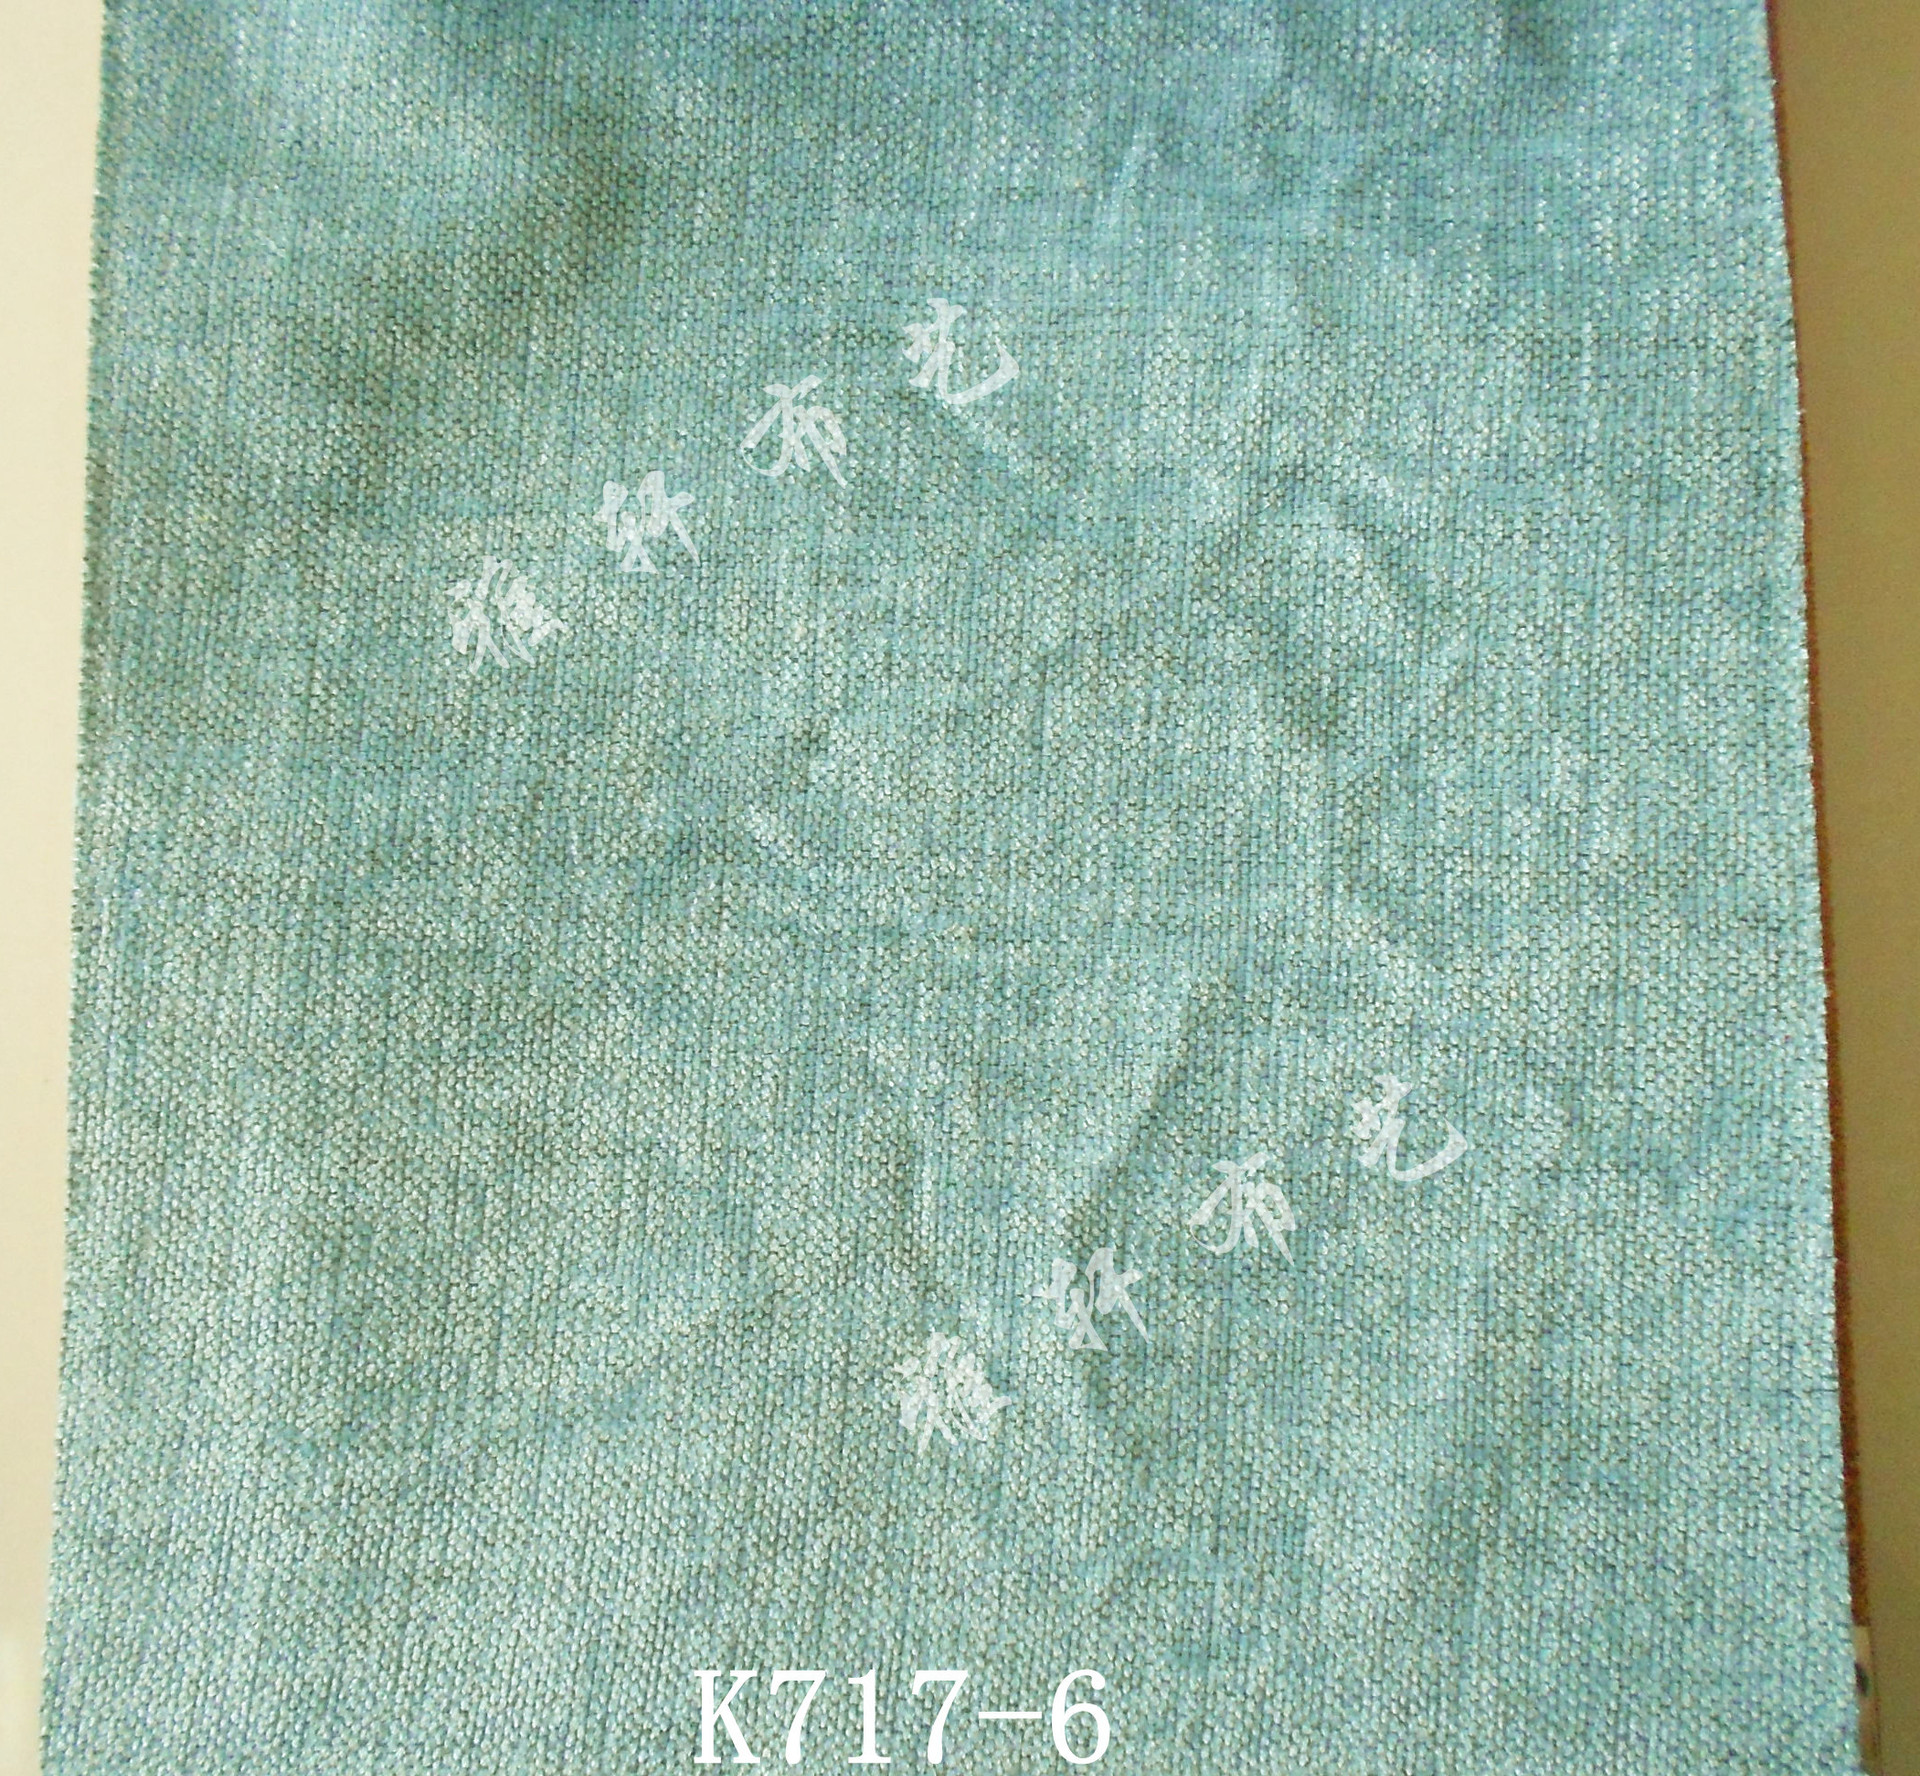 k717-6